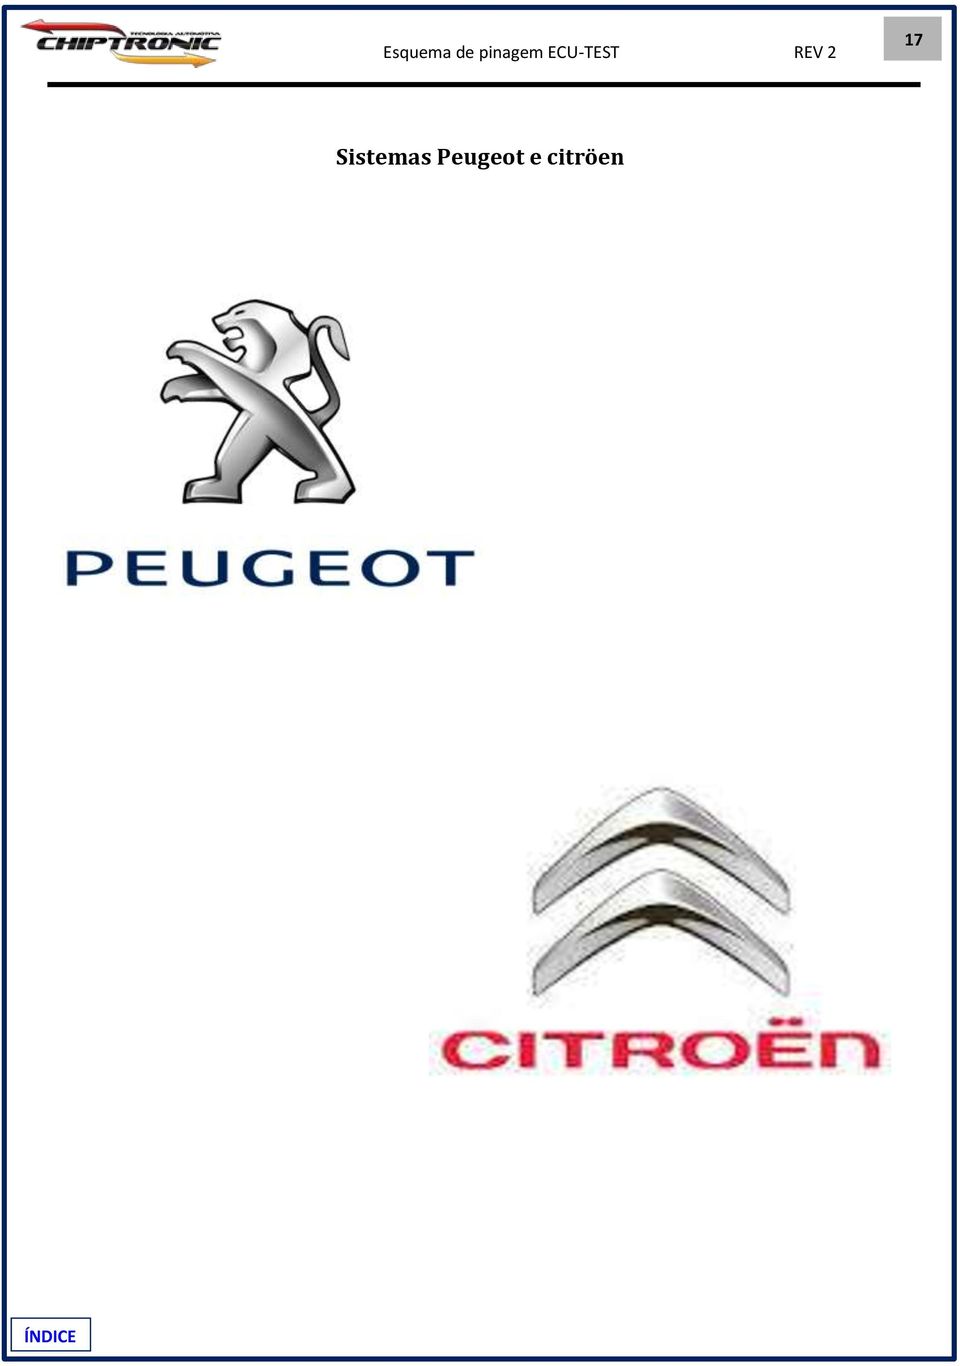 Peugeot e